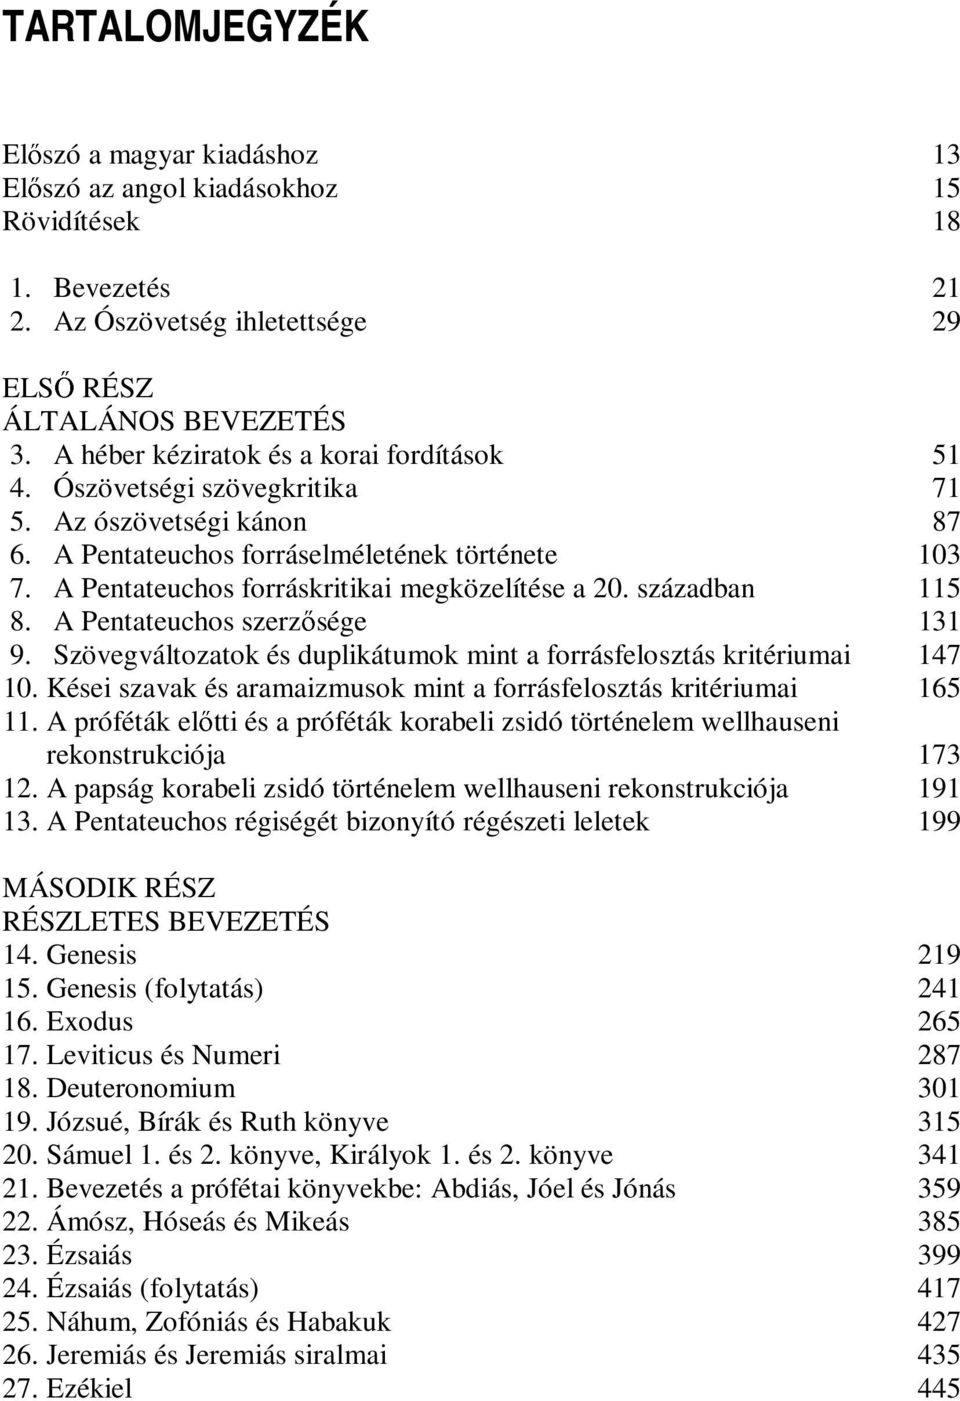 A Pentateuchos forráskritikai megközelítése a 20. században 115 8. A Pentateuchos szerzısége 131 9. Szövegváltozatok és duplikátumok mint a forrásfelosztás kritériumai 147 10.